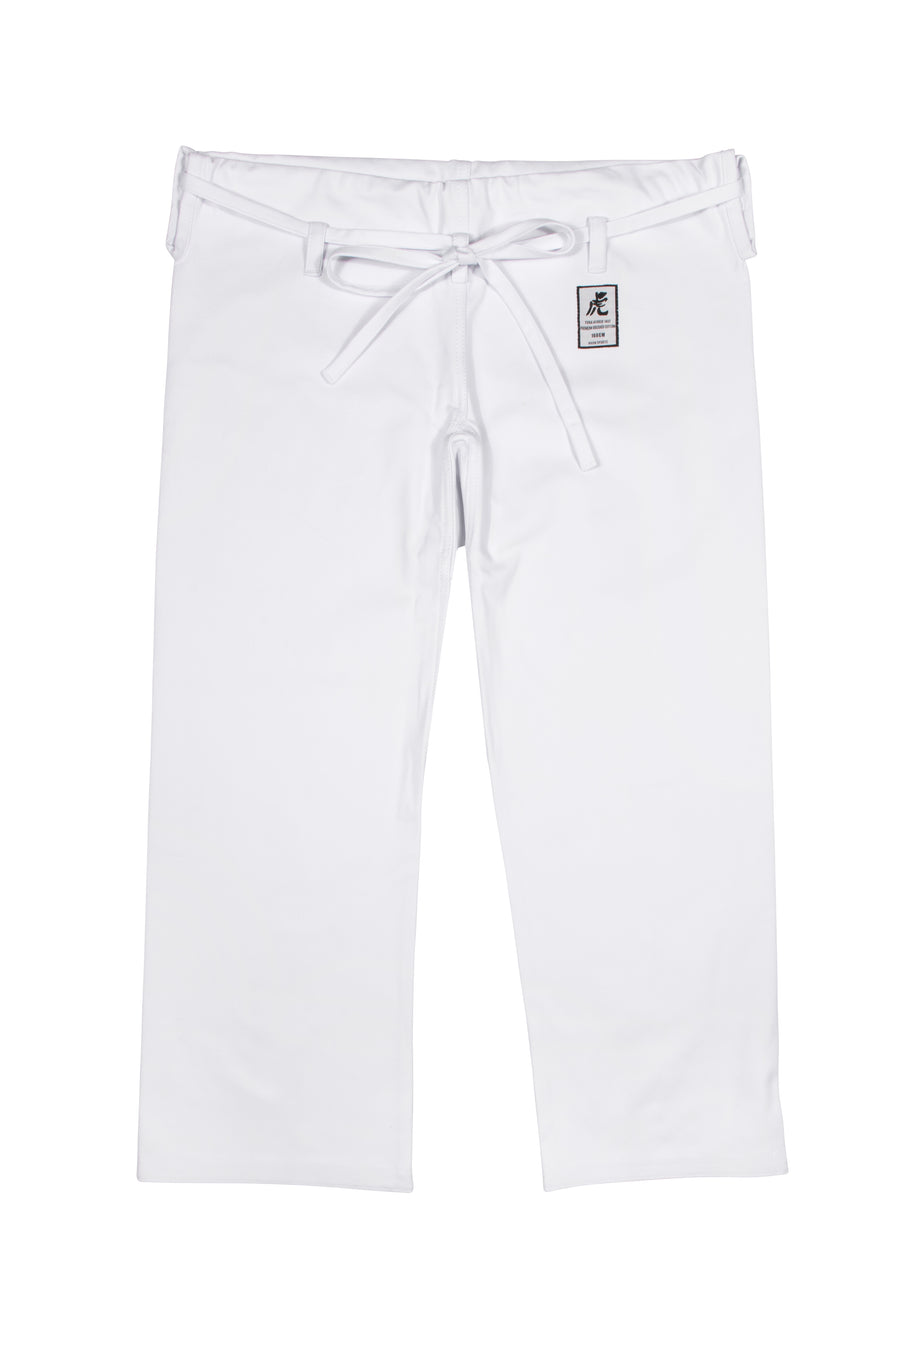 IKKEN Tora Karate Gi Trouser Pants | 14oz Cotton | Japanese Cut | Made To Order